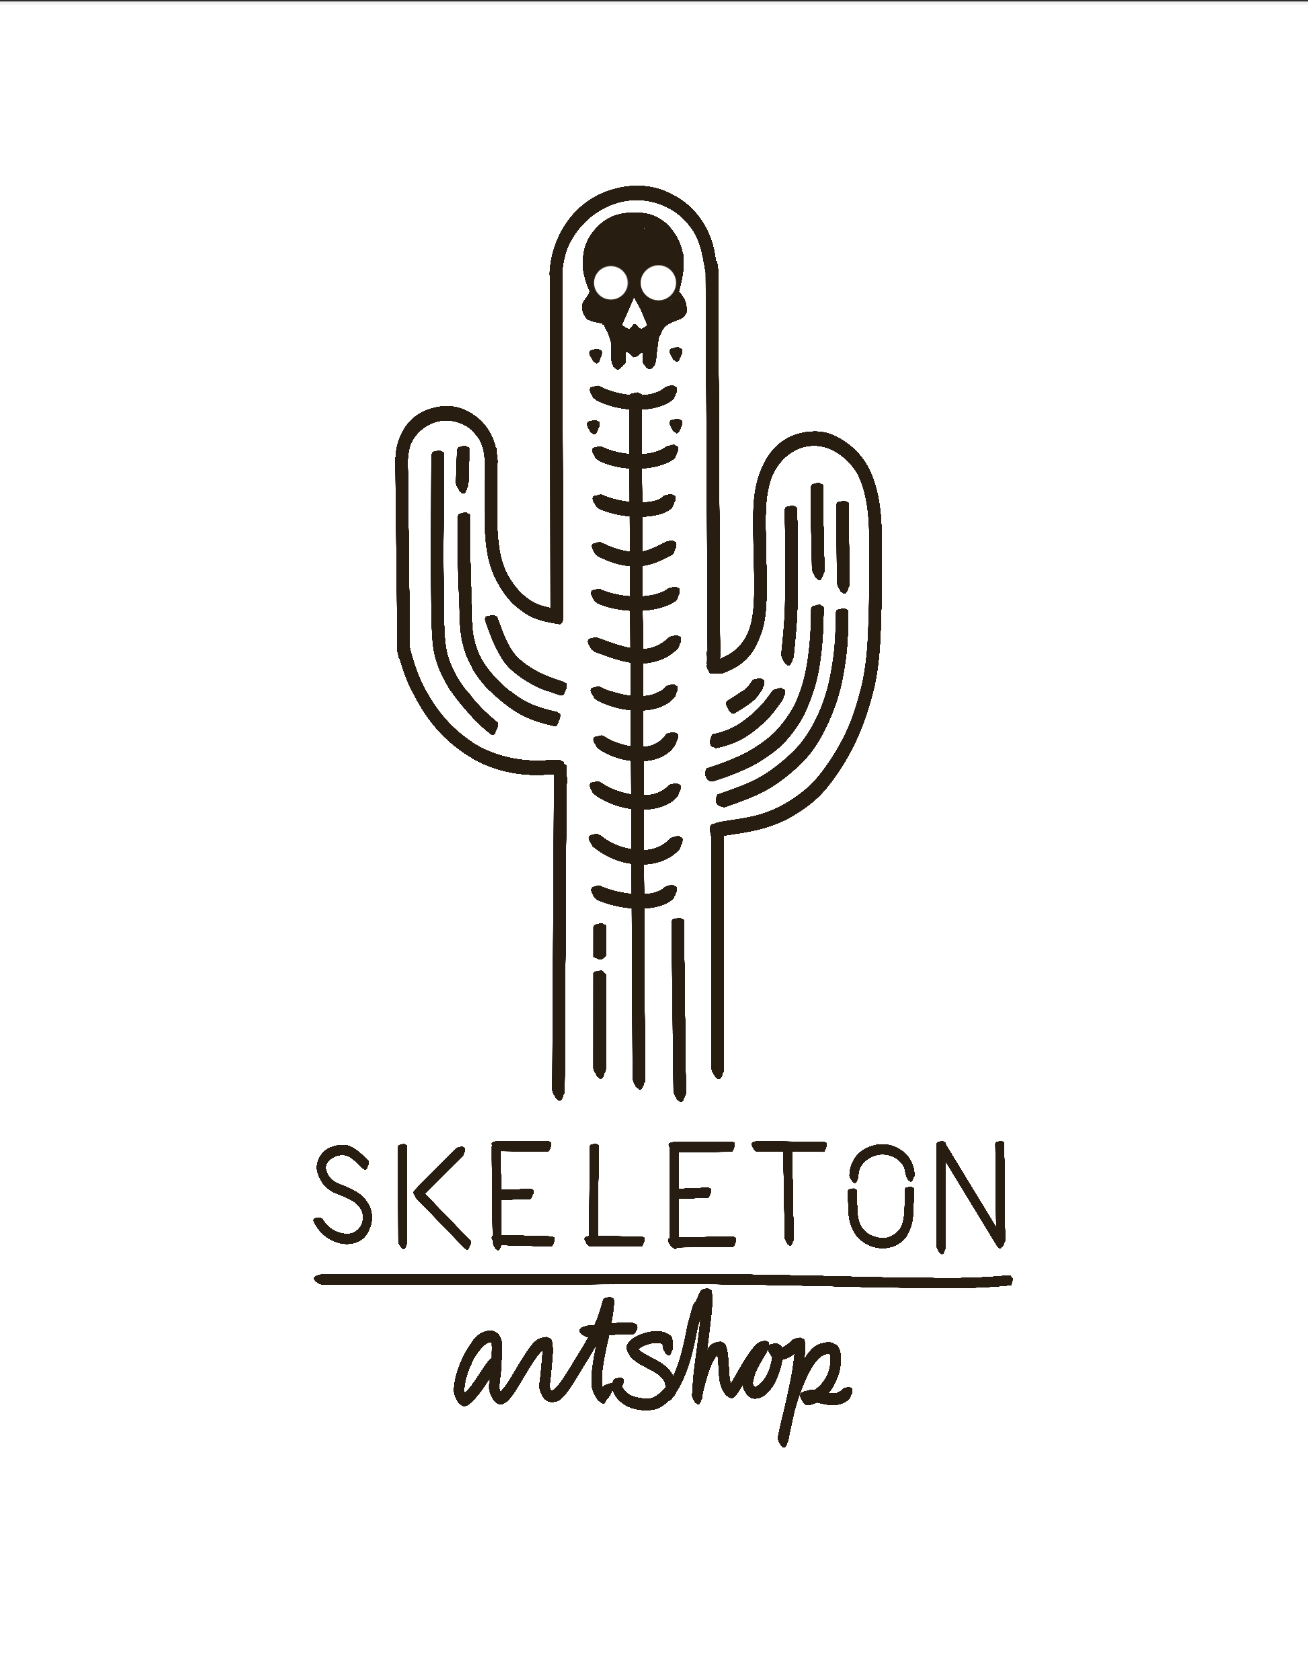 Skeleton Artshop